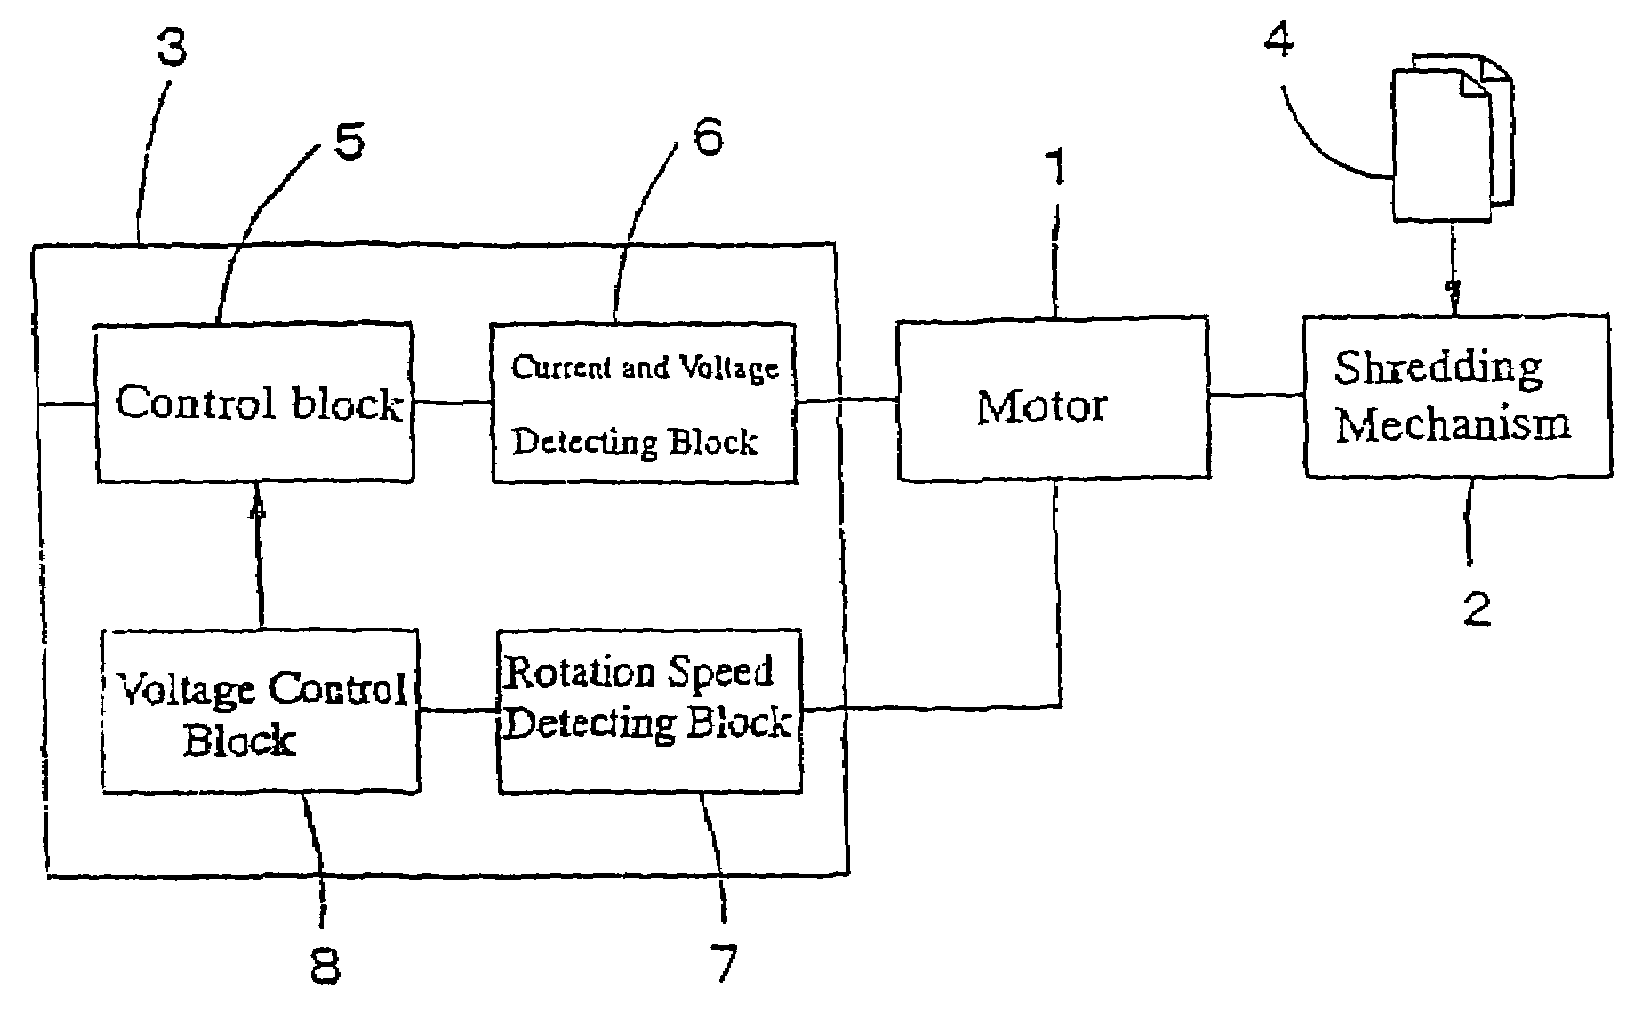 Motor control circuit for paper shredders